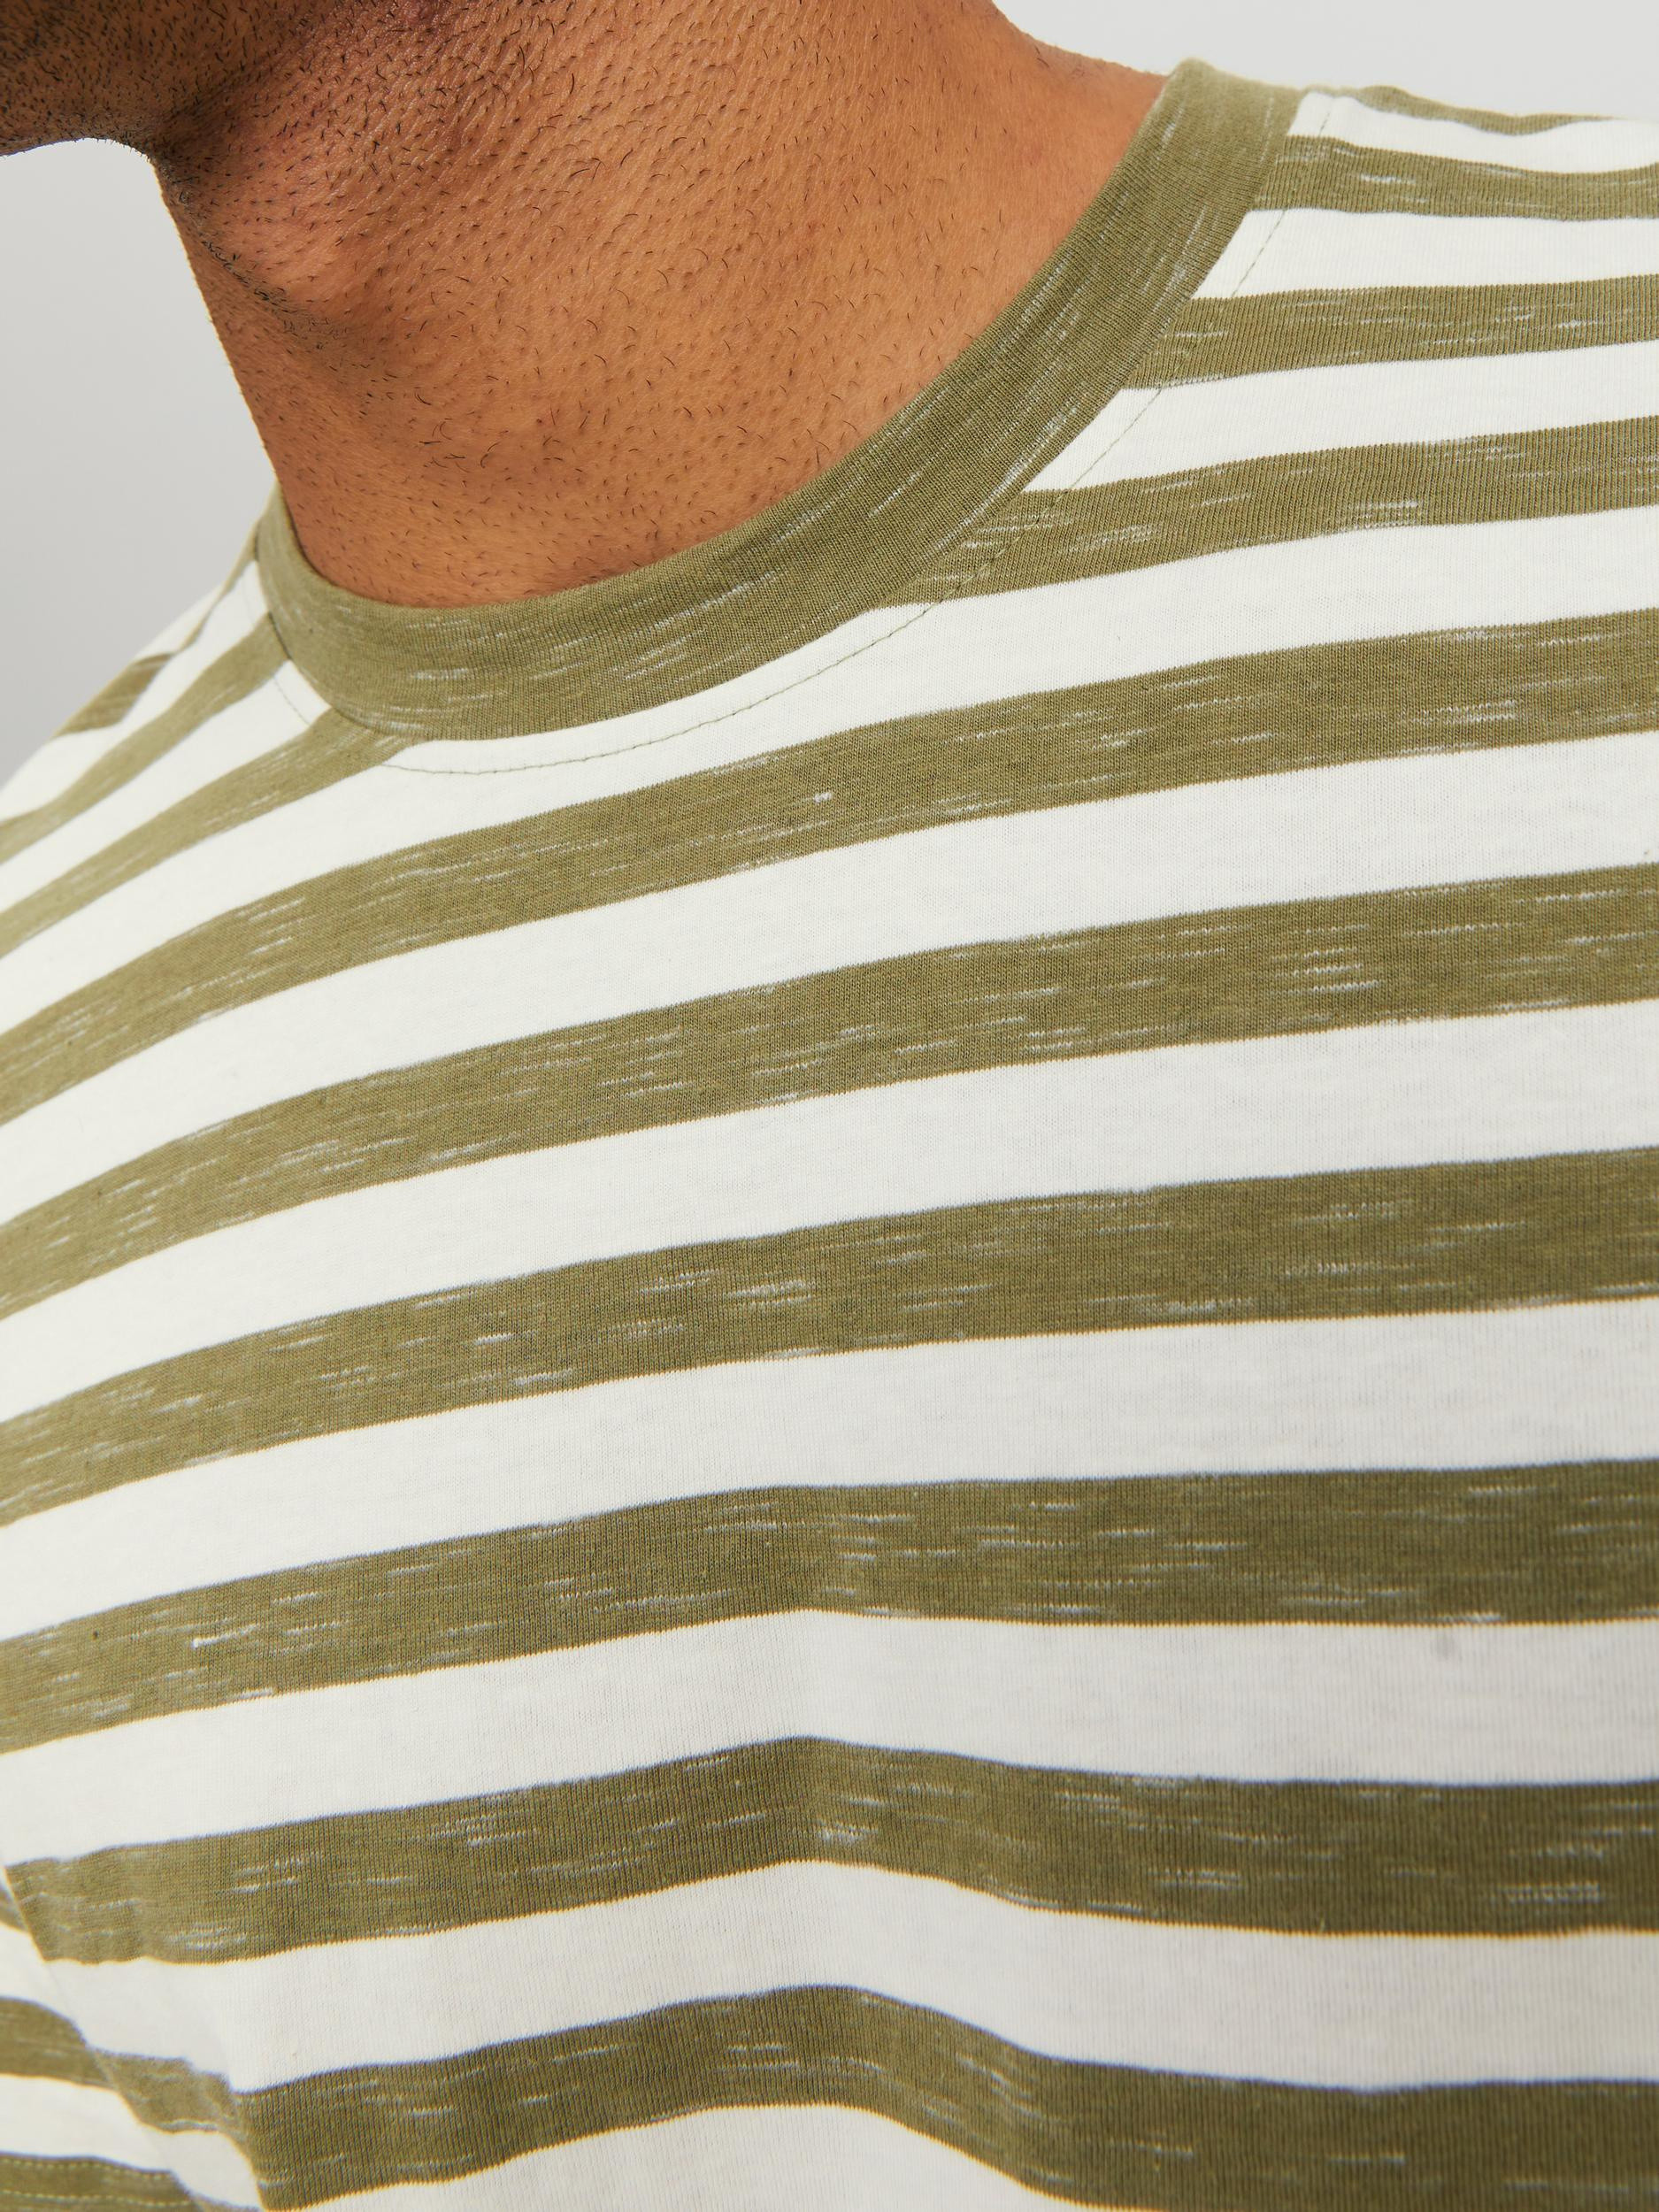 Jack & Jones - Striped T-Shirt, Light Green, large image number 4